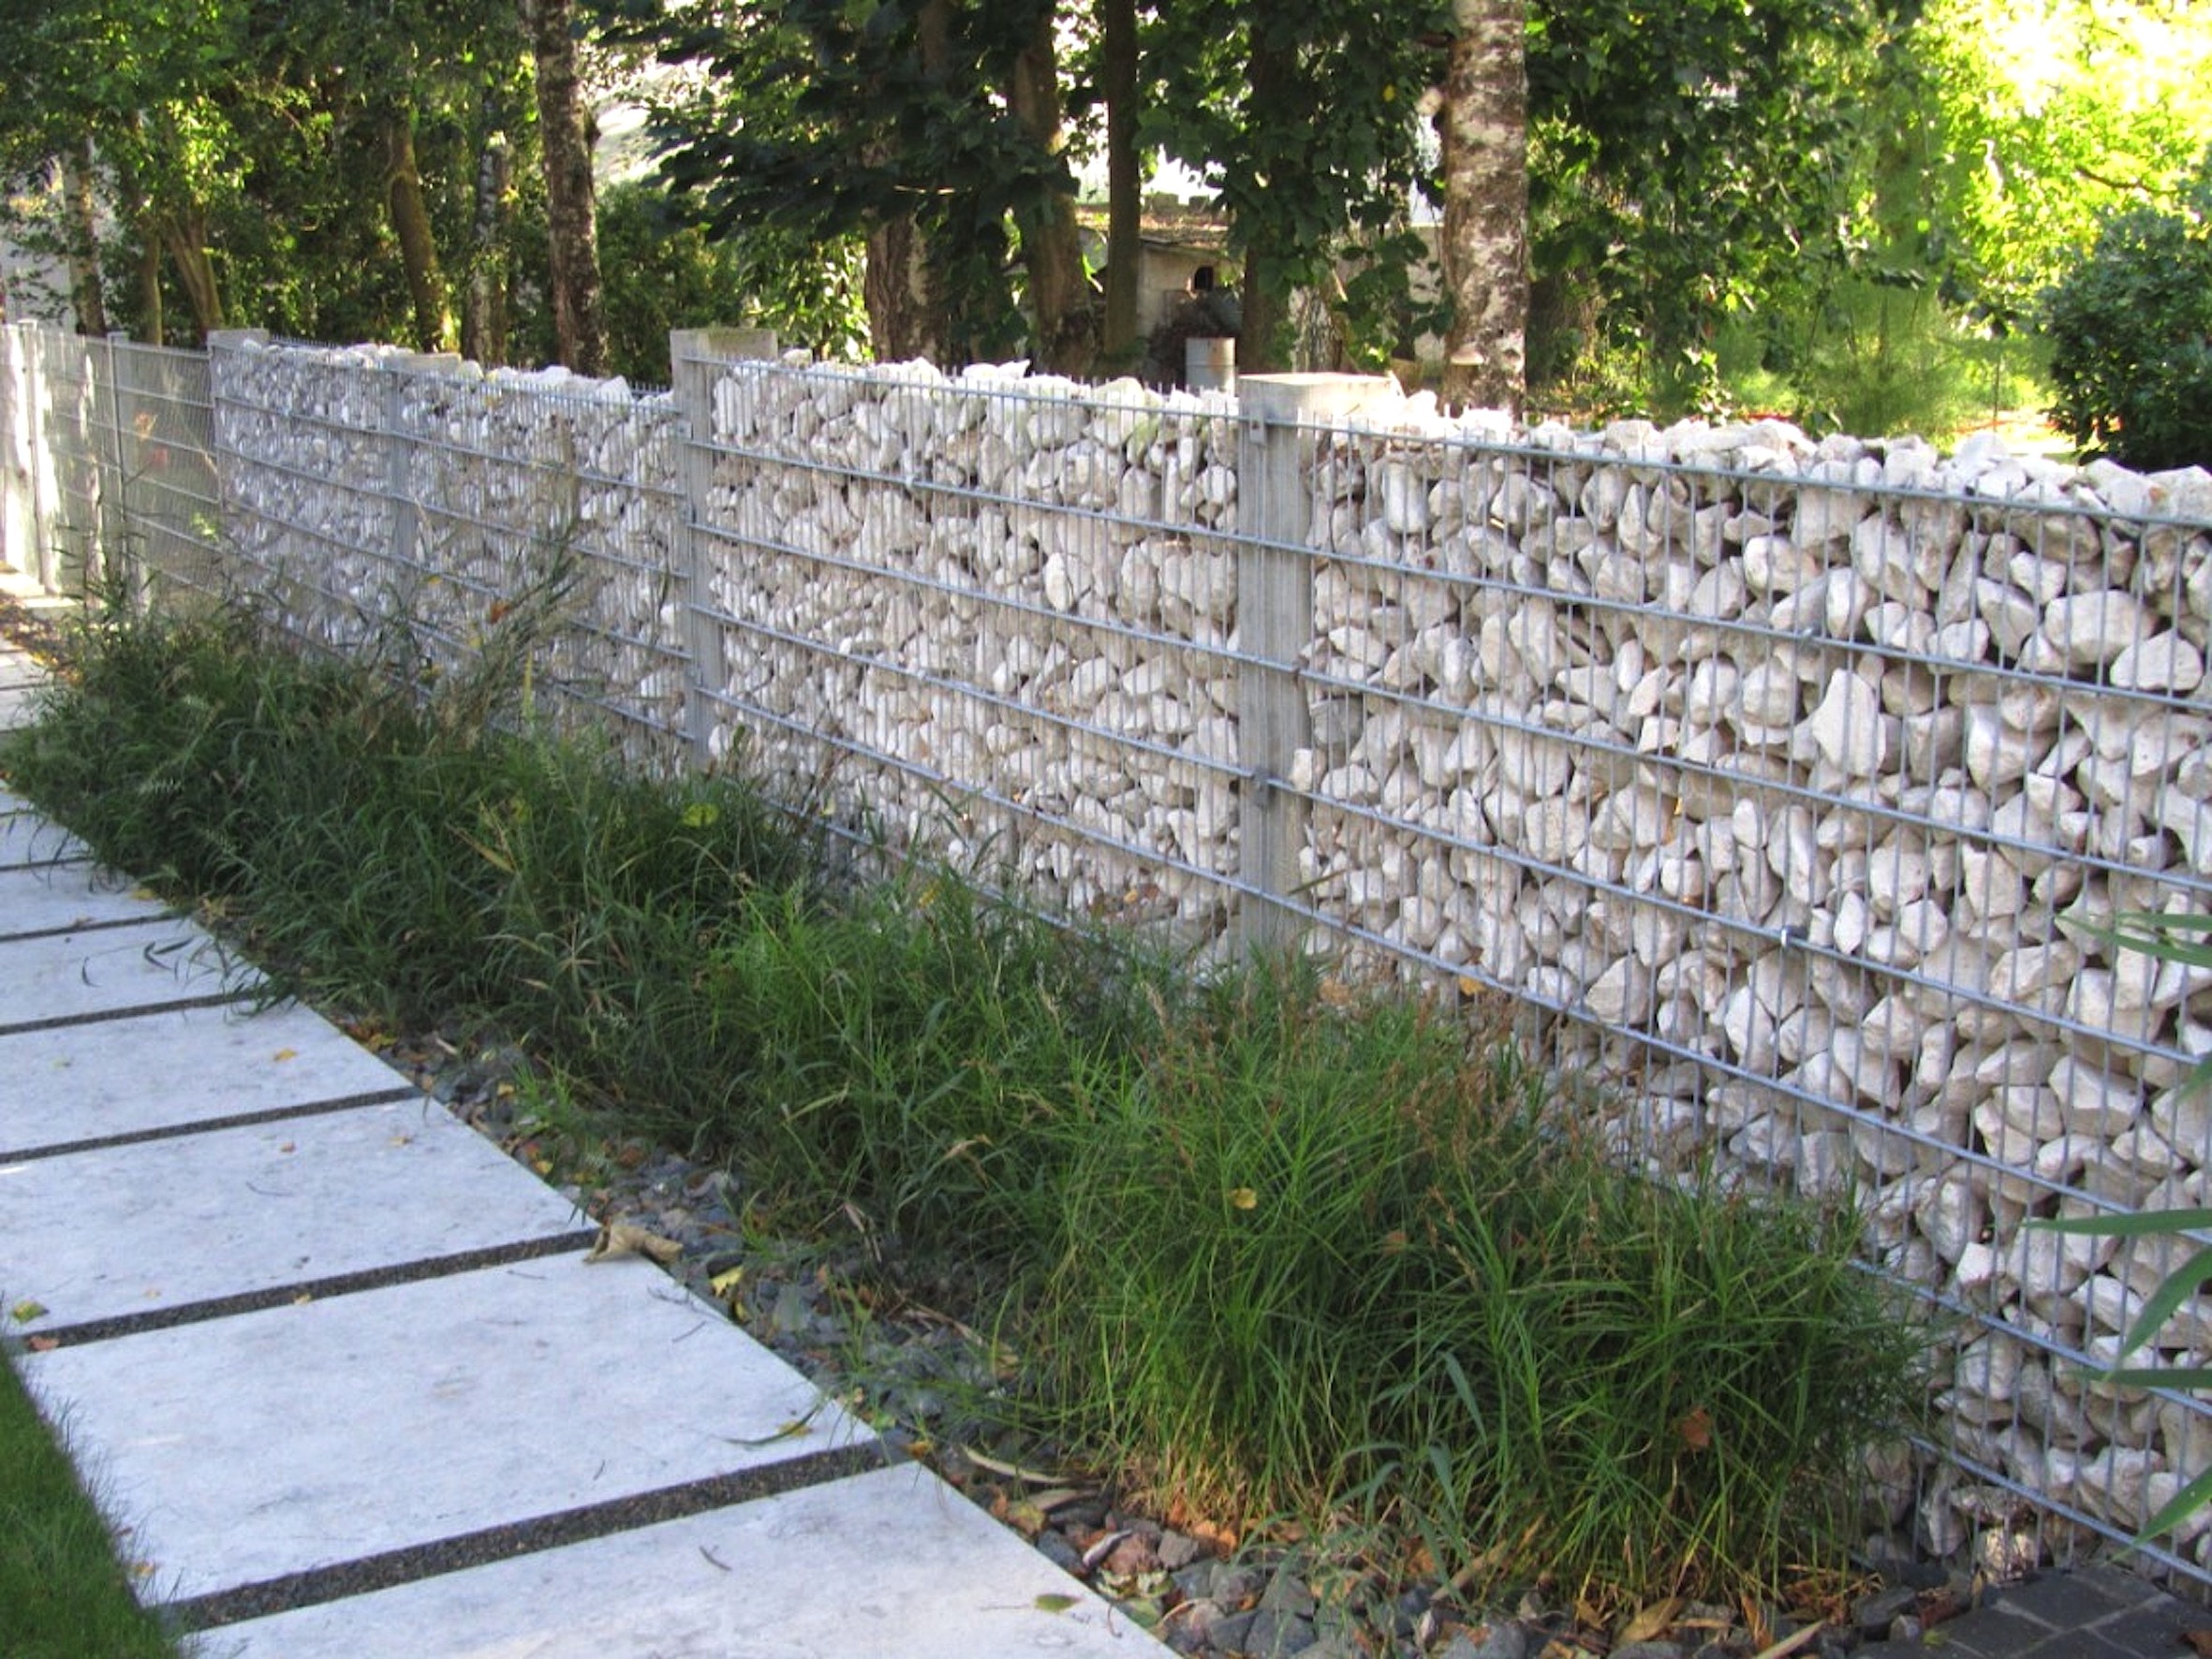 Le mur gabion forme une clôture peu vulnérable au vandalisme, d’autant plus s’il est garni de pierraille. © Leroy Merlin